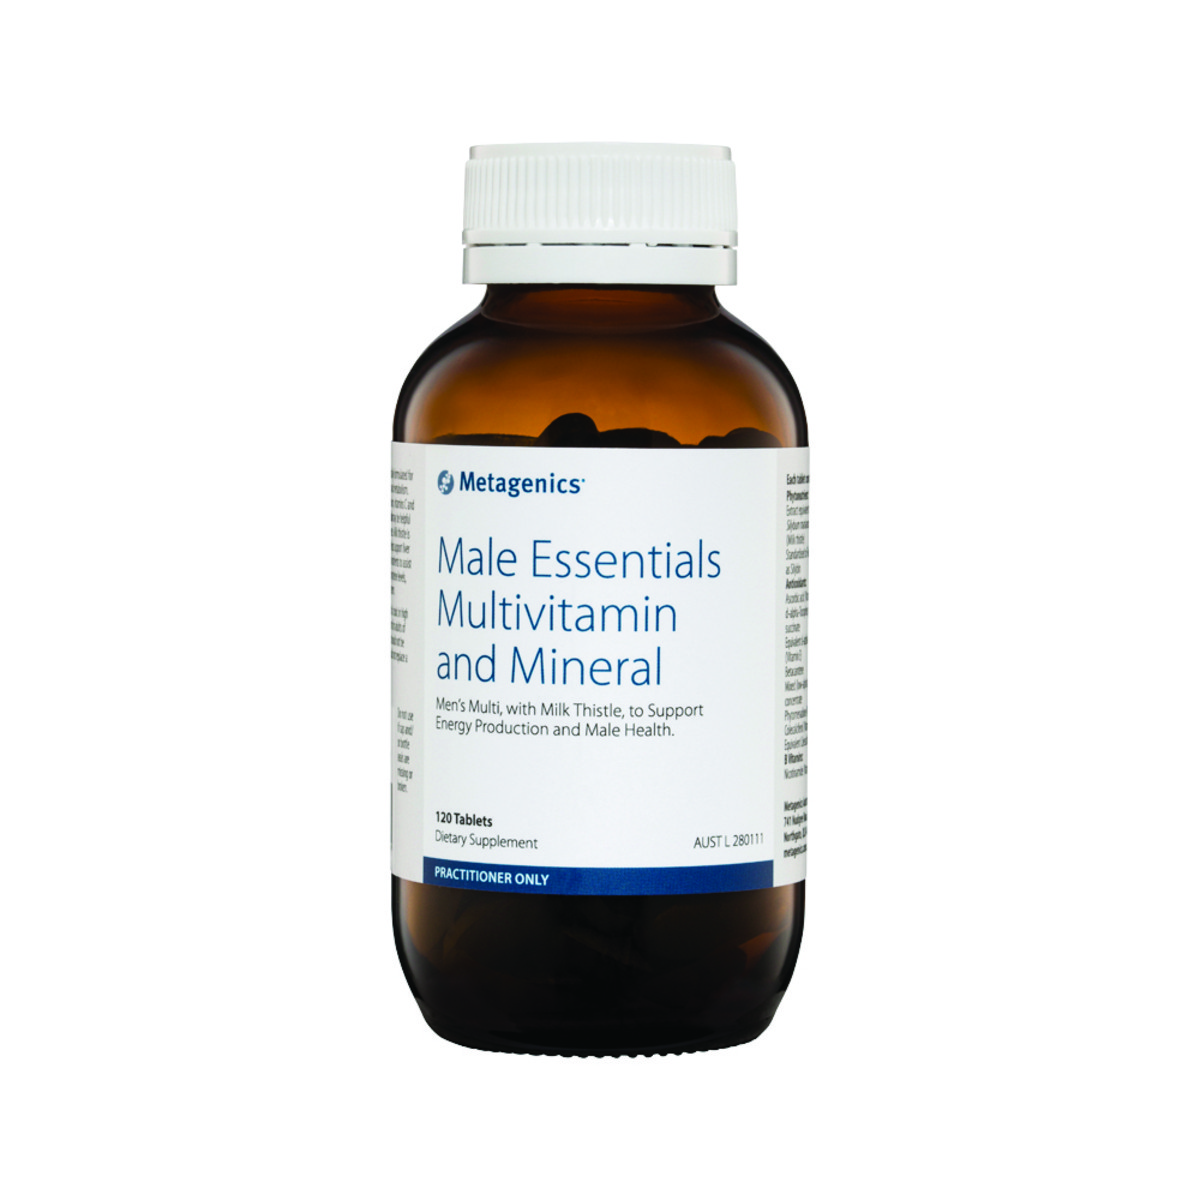 METAGENICS - Male Essentials Multivitamin